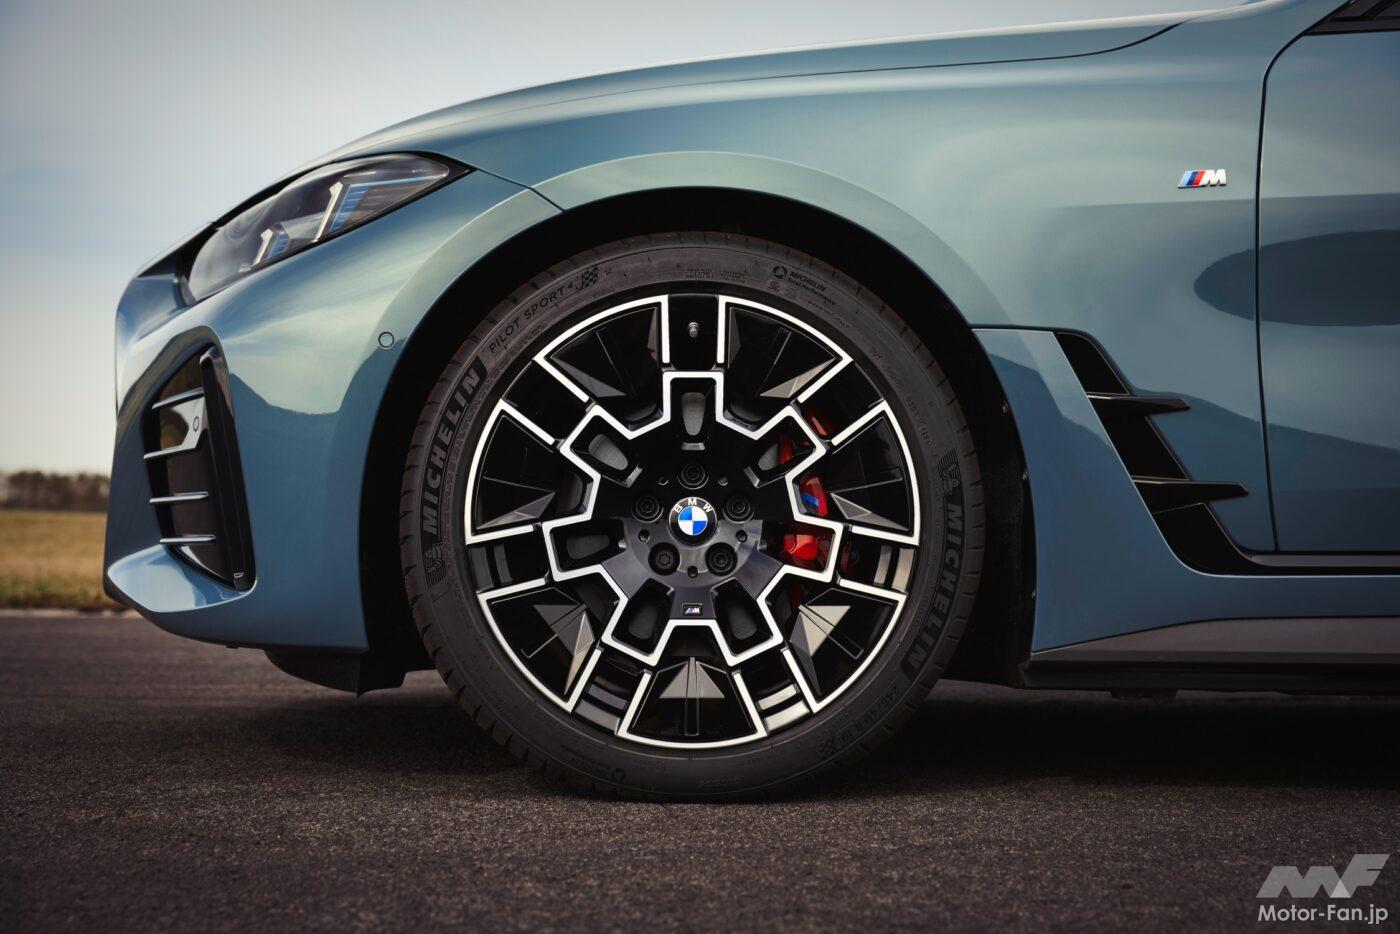 「BMW『i4』、『4シリーズ・グランクーペ』がデザインスタイルを刷新! 内外装ともにプレミアムさを増したミッドサイズモデル!」の8枚めの画像